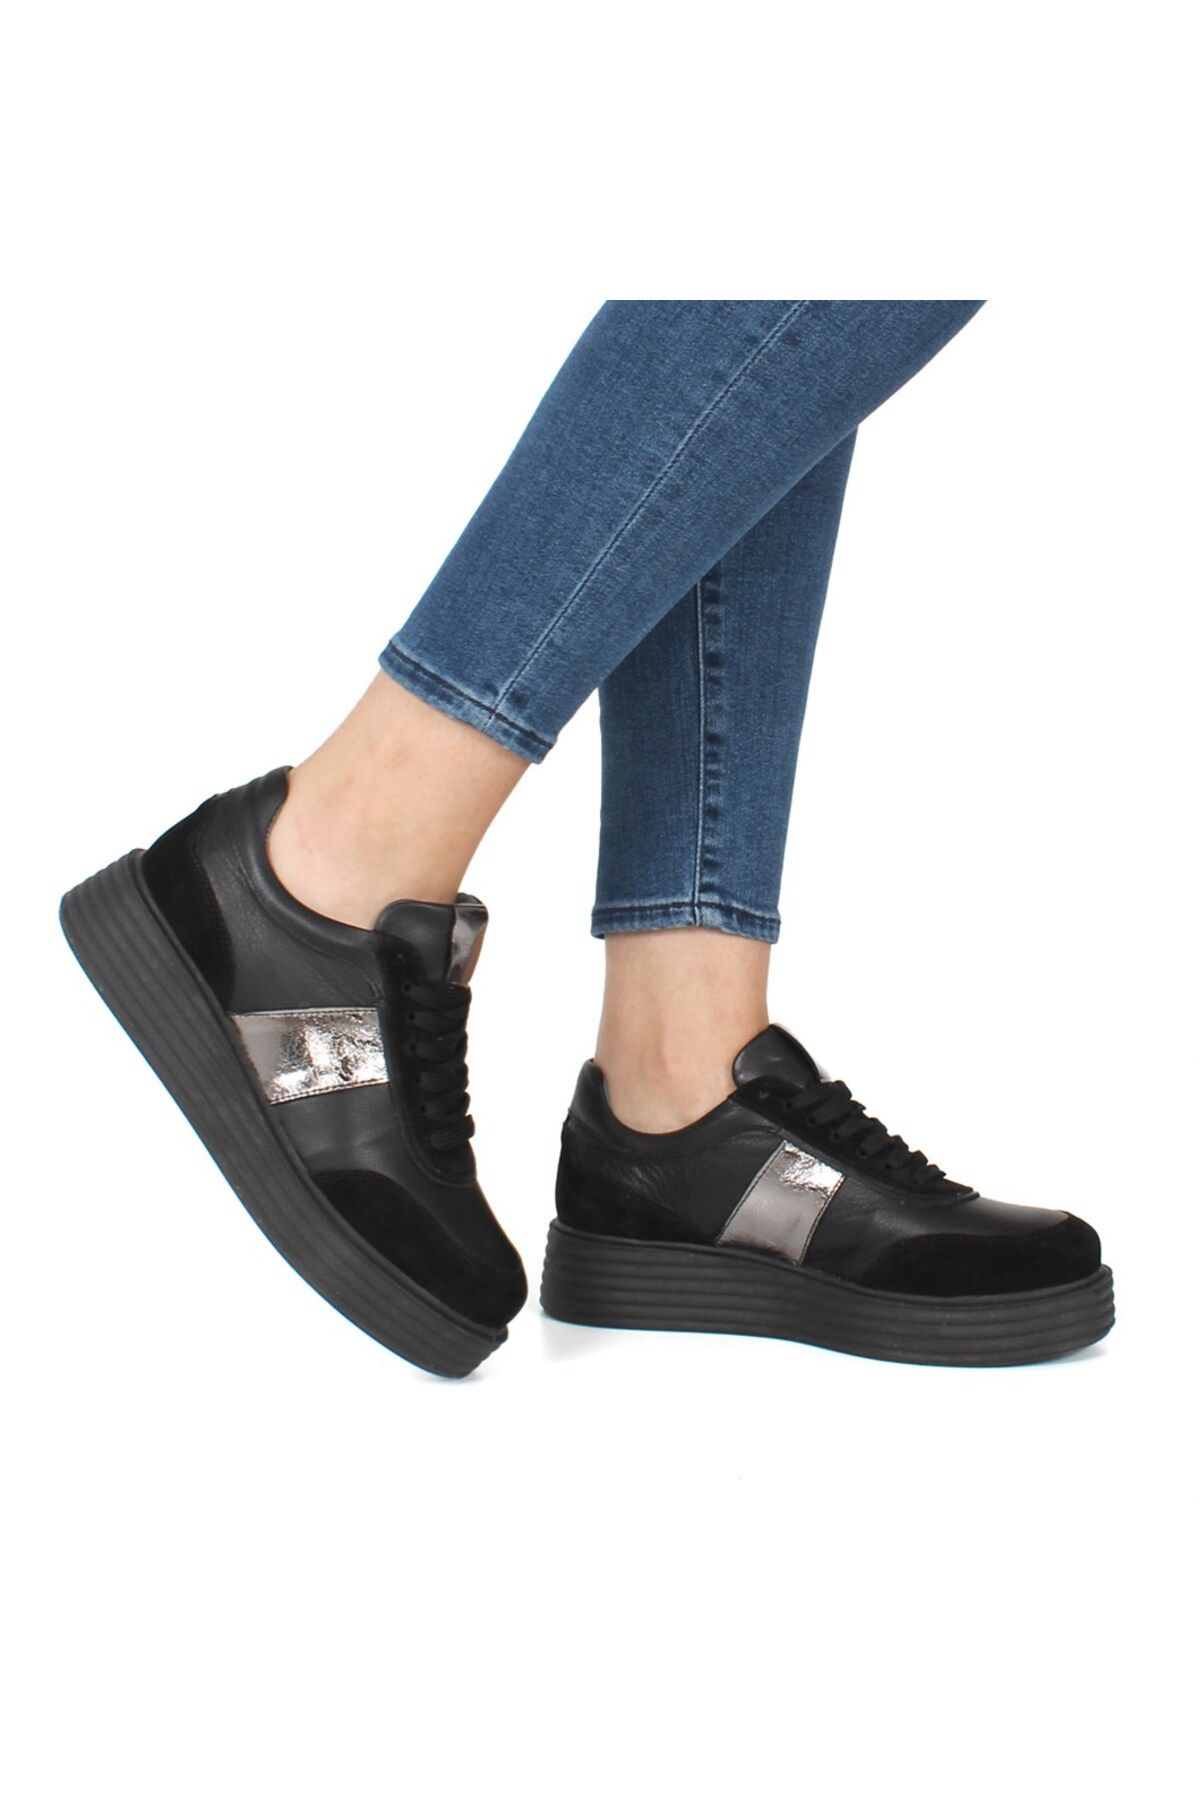 Celal Gültekin Siyah Deri Ayakkabı Kadın Sneaker 115 20604-1